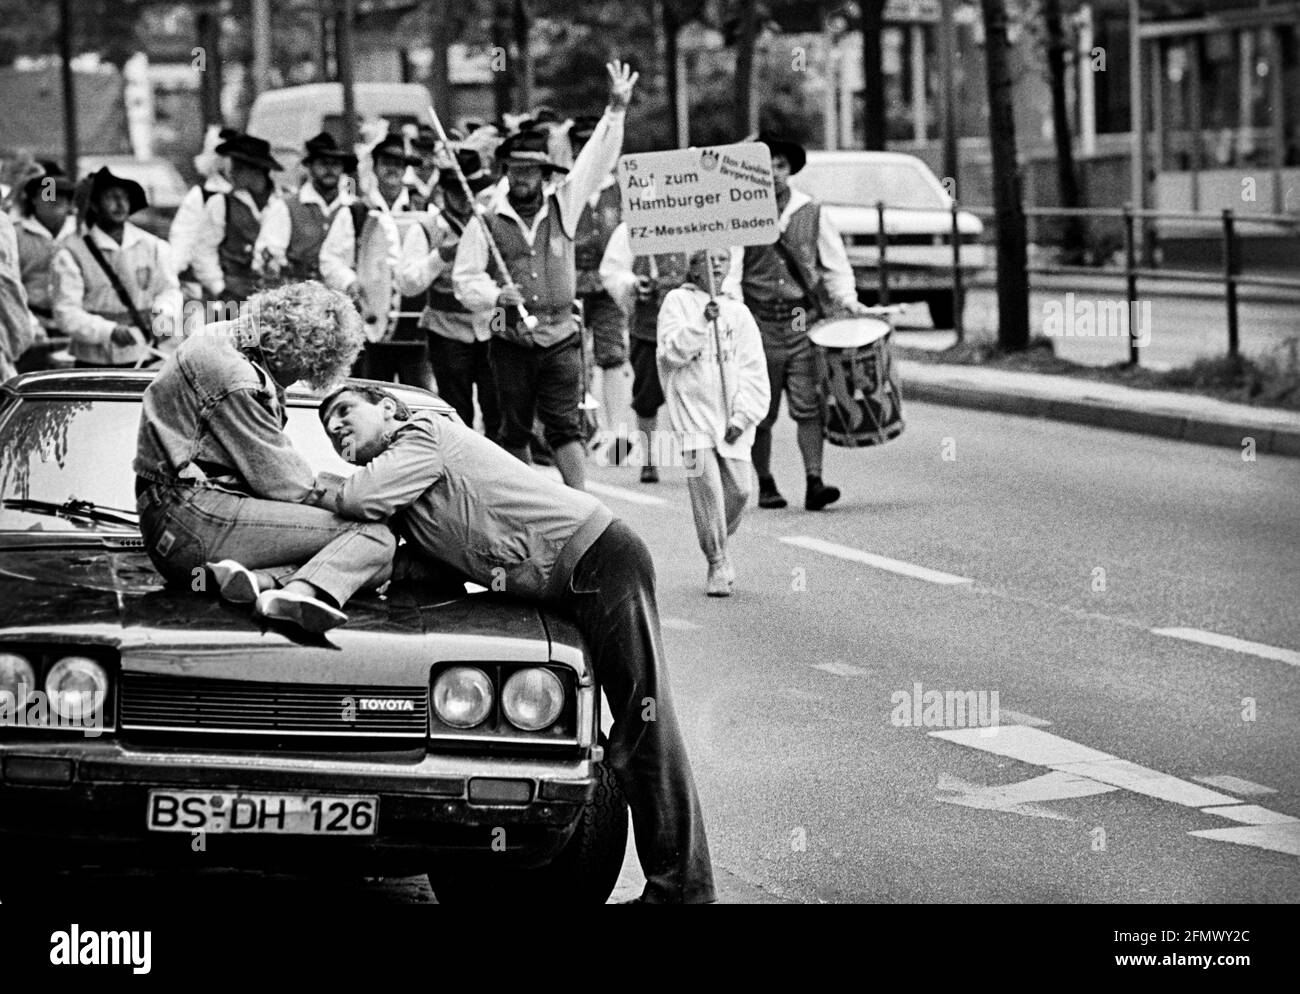 Un homme prend soin de la figure incrustées sur le capot de sa voiture, tandis qu'un groupe de marche défichier le Reeperbahn de Hambourg en arrière-plan. 08.08.198 Banque D'Images